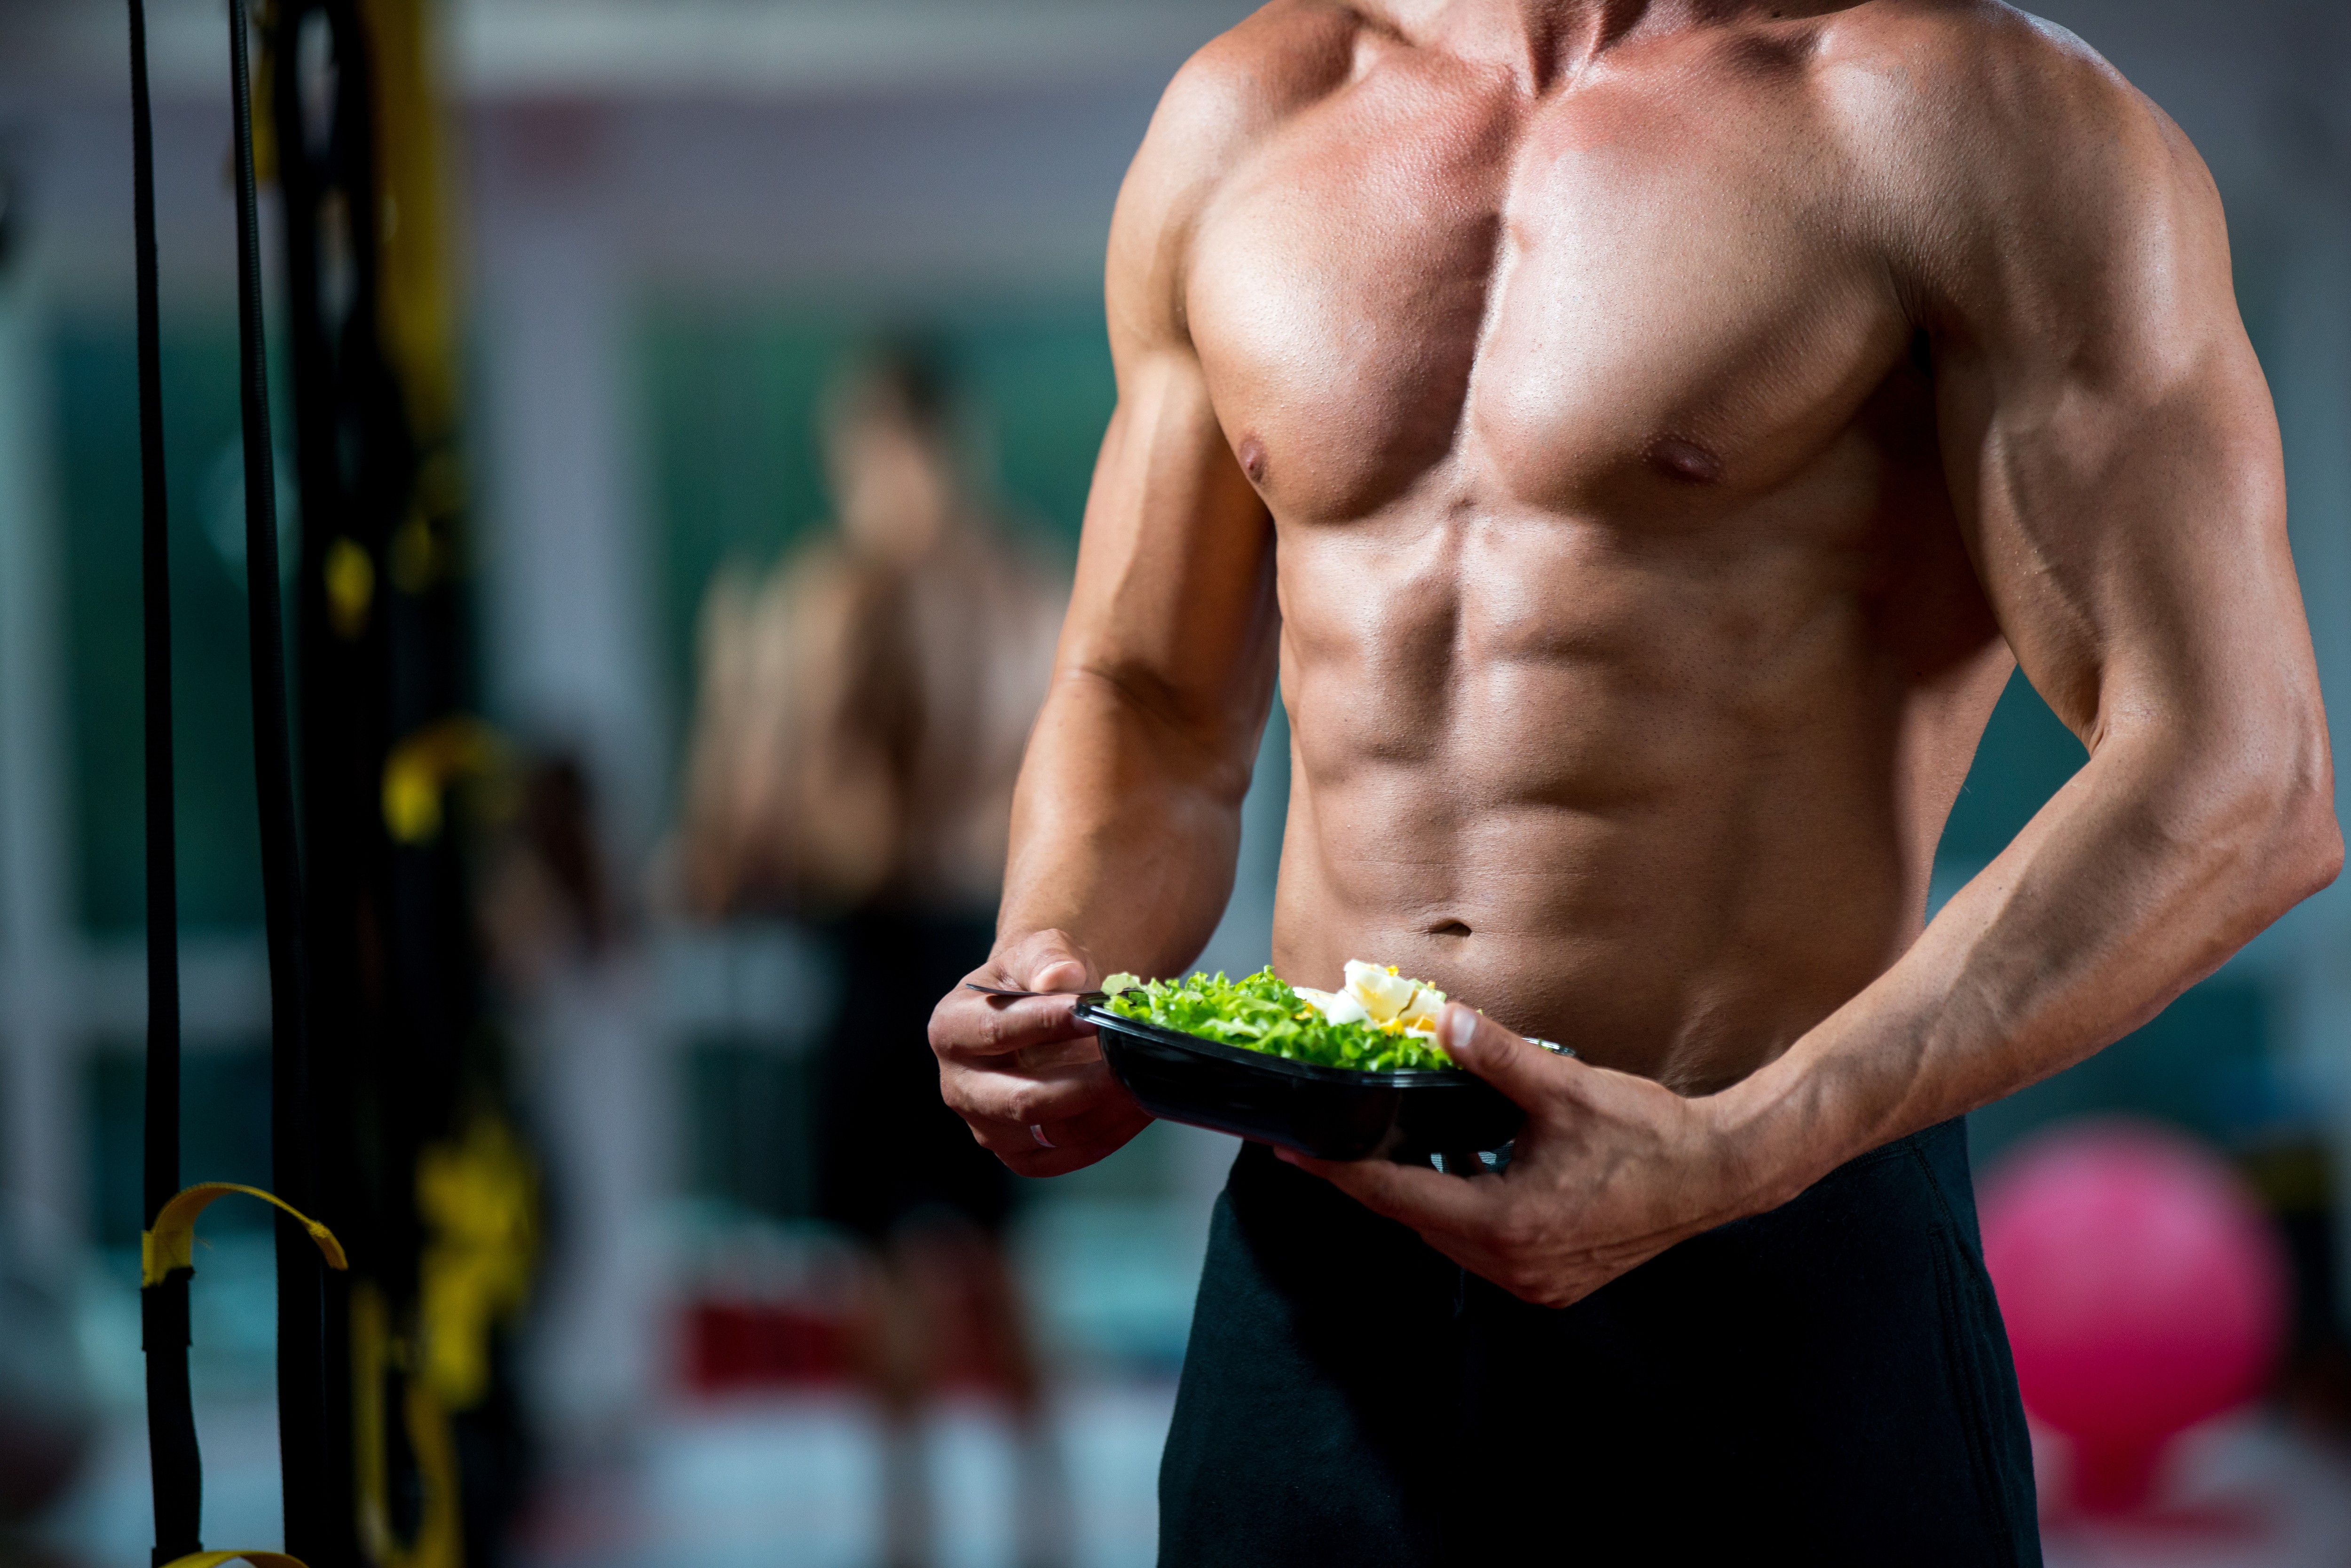 Красная после тренировки. Спортивный мужчина. Здоровое тело мужчины. Питание и тренировки. Бодибилдер и еда.